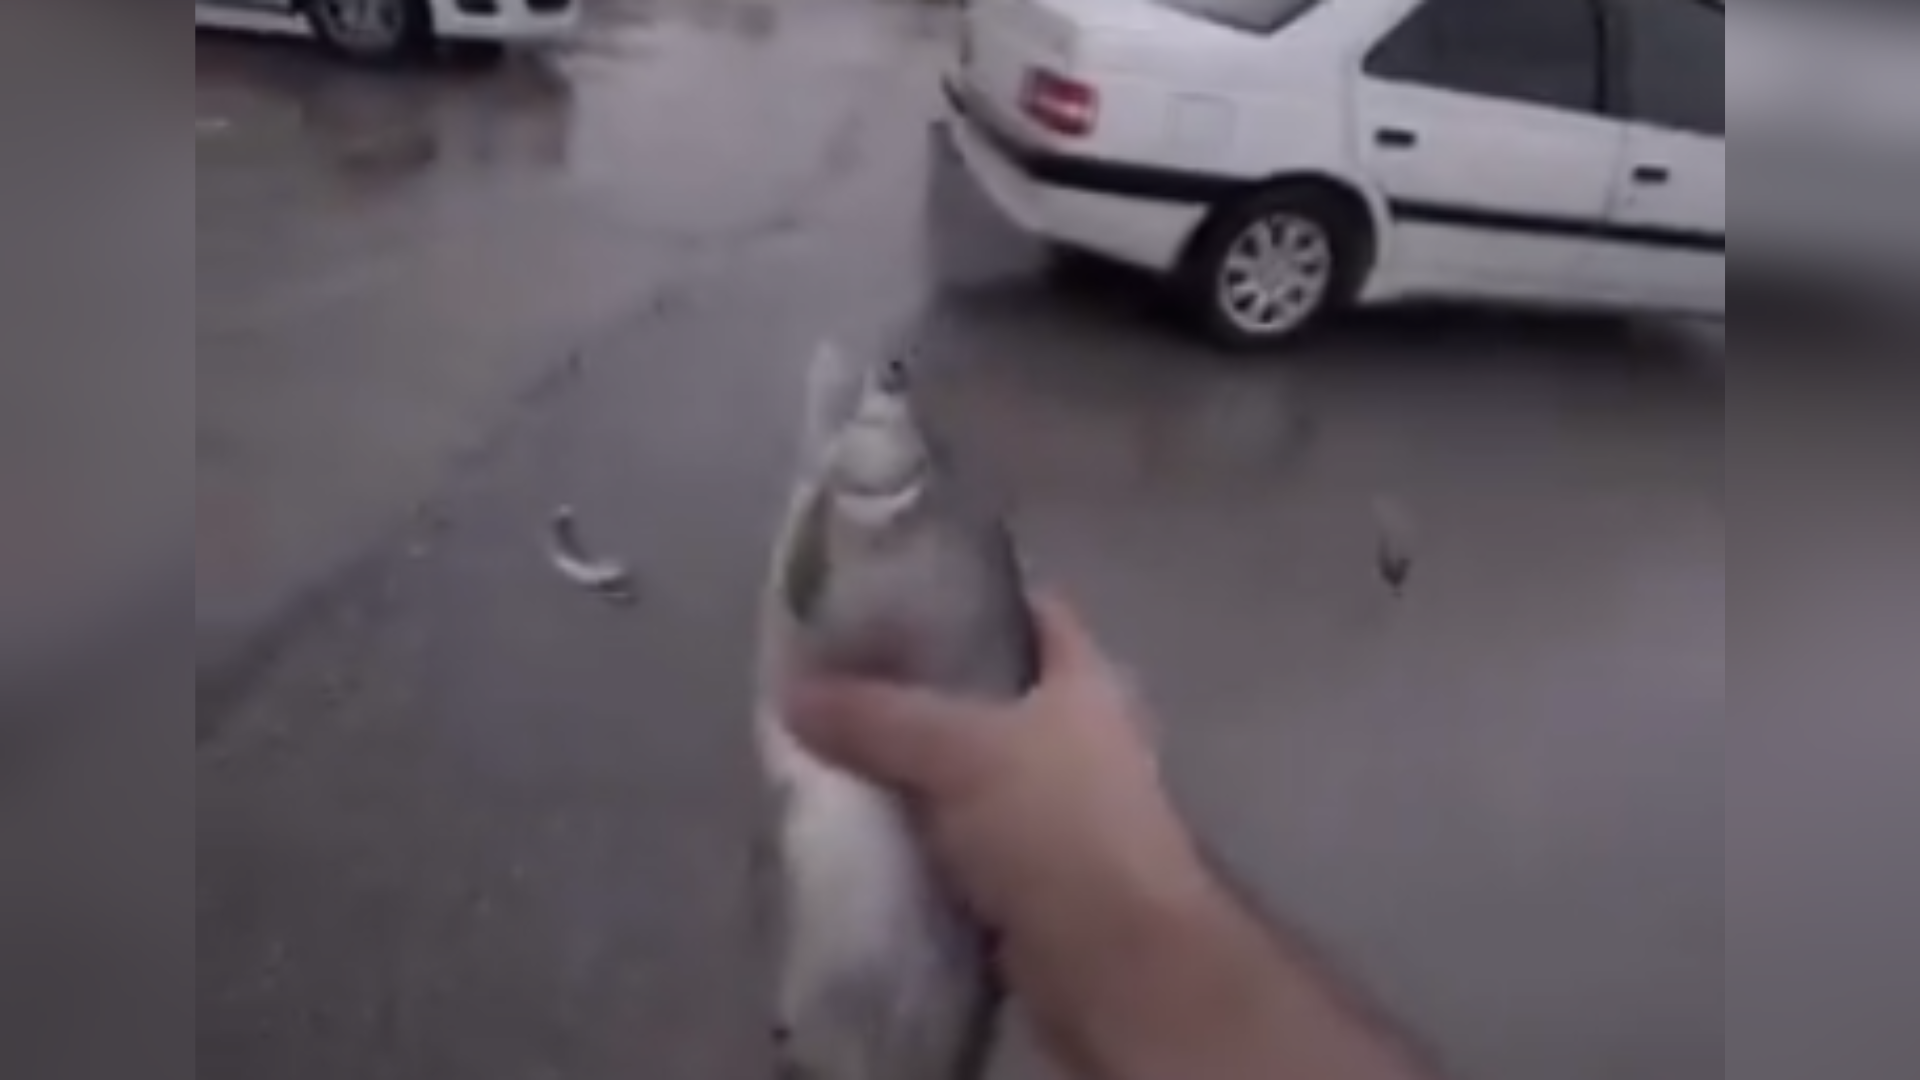 video: it's raining fish in iran amid storm